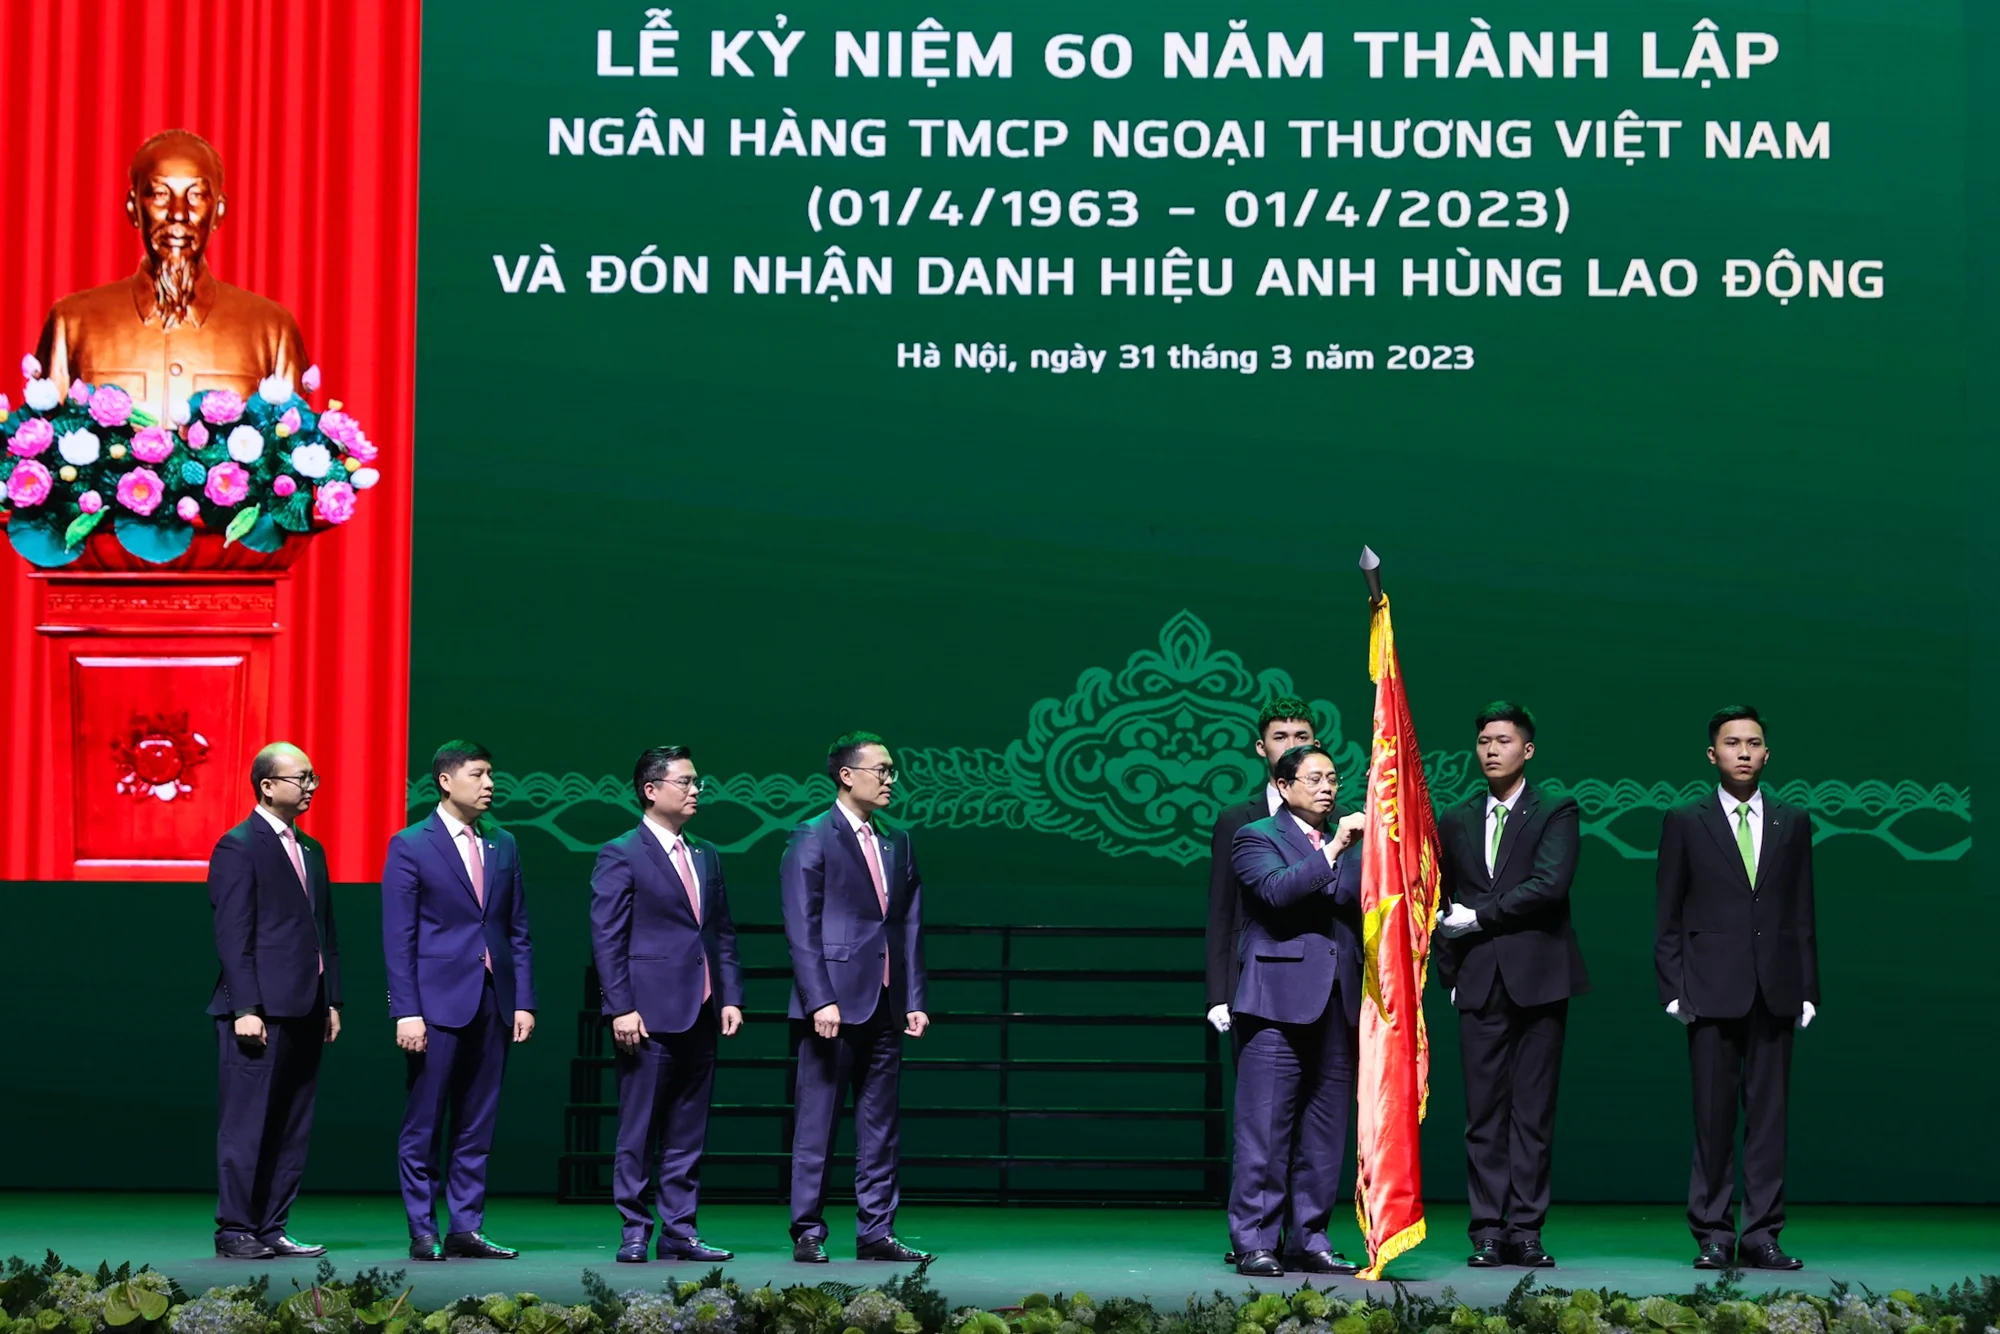 Thay mặt lãnh đạo Đảng và Nhà nước, Thủ tướng Chính phủ Phạm Minh Chính trao tặng ngân hàng Vietcombank danh hiệu Anh hùng Lao động